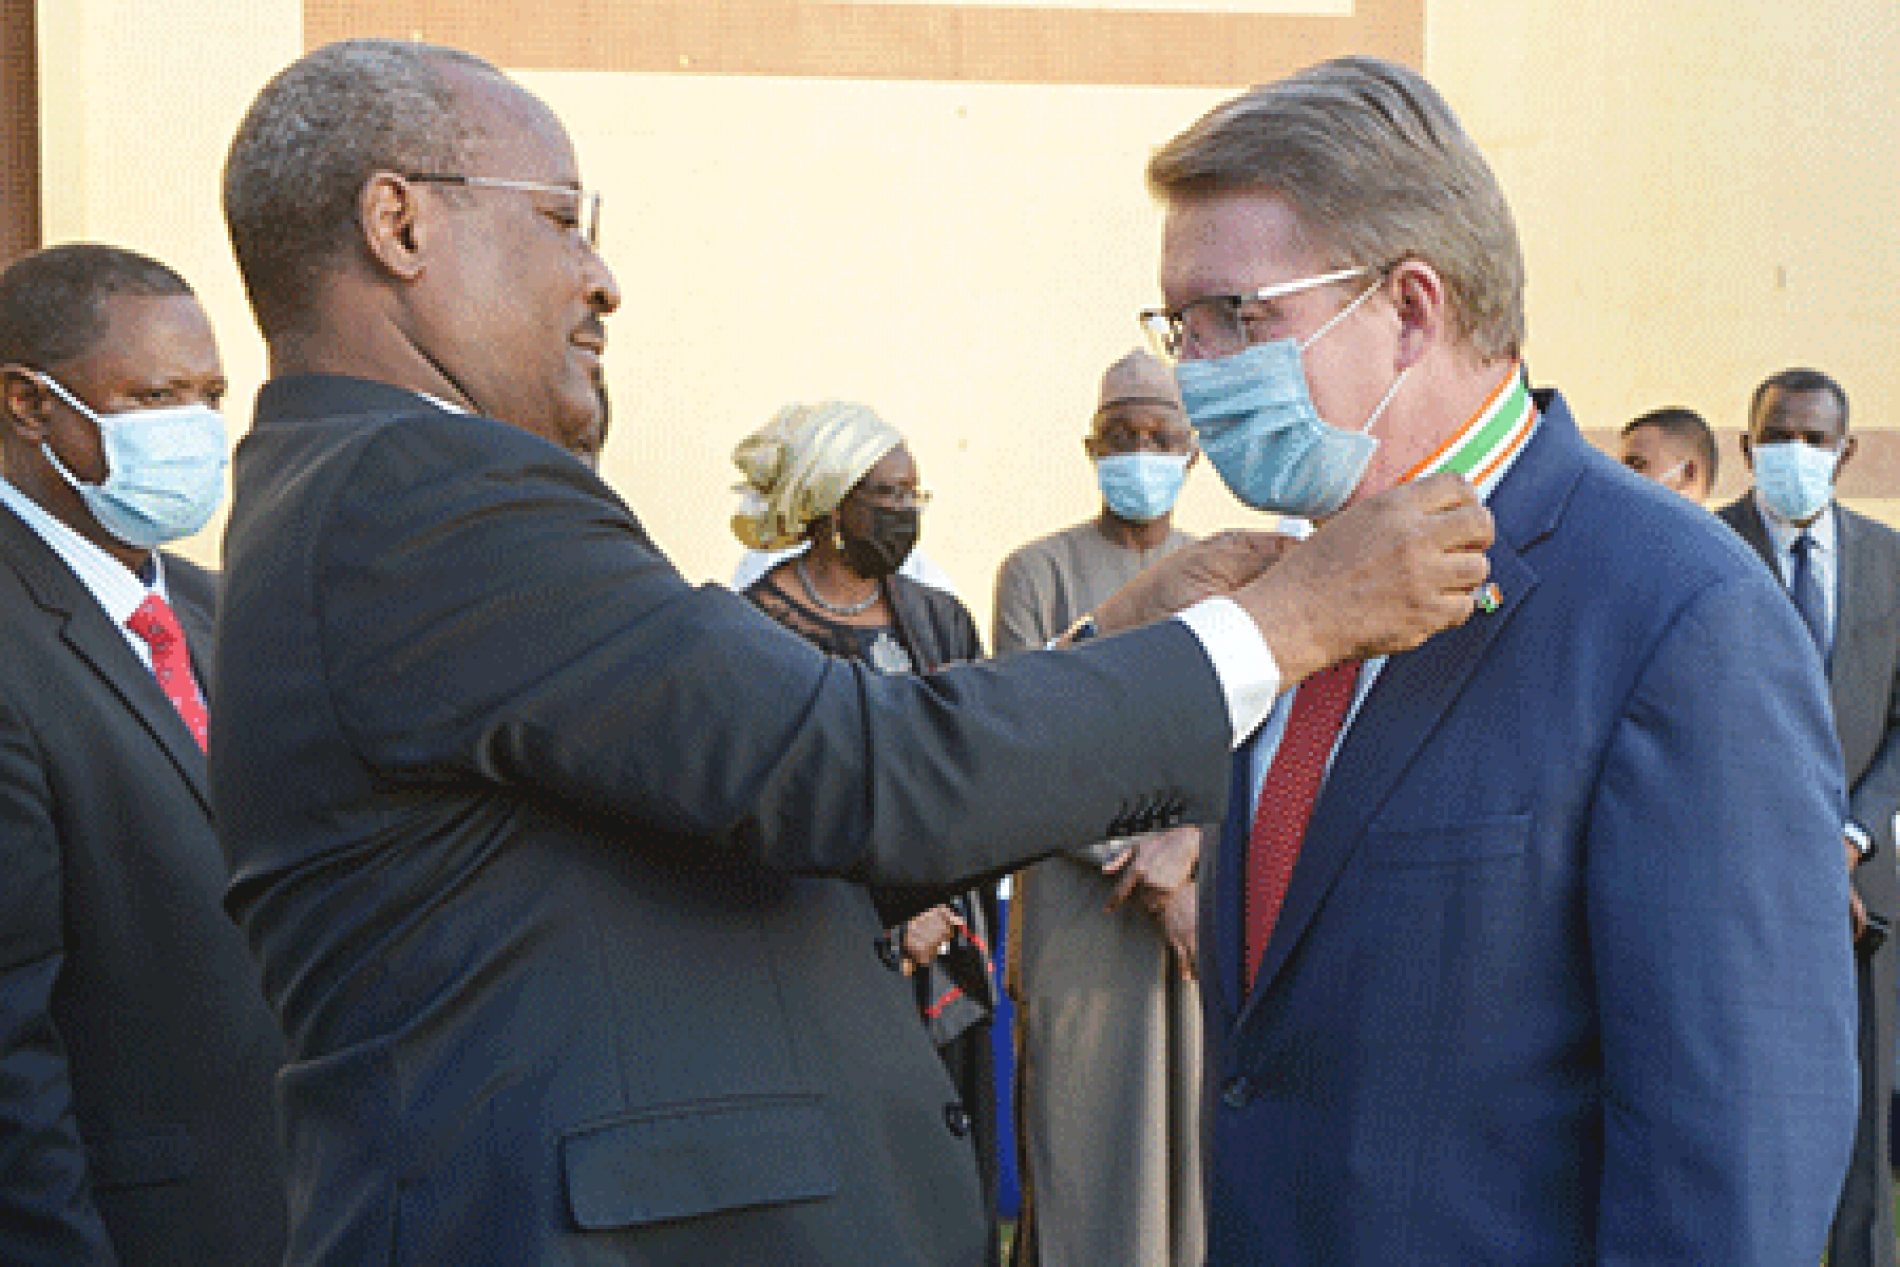 Cérémonie de distinction de l’ambassadeur des Etats-Unis d’Amérique : L’ambassadeur des USA élevé au grade de Commandeur dans l’Ordre de mérite du Niger